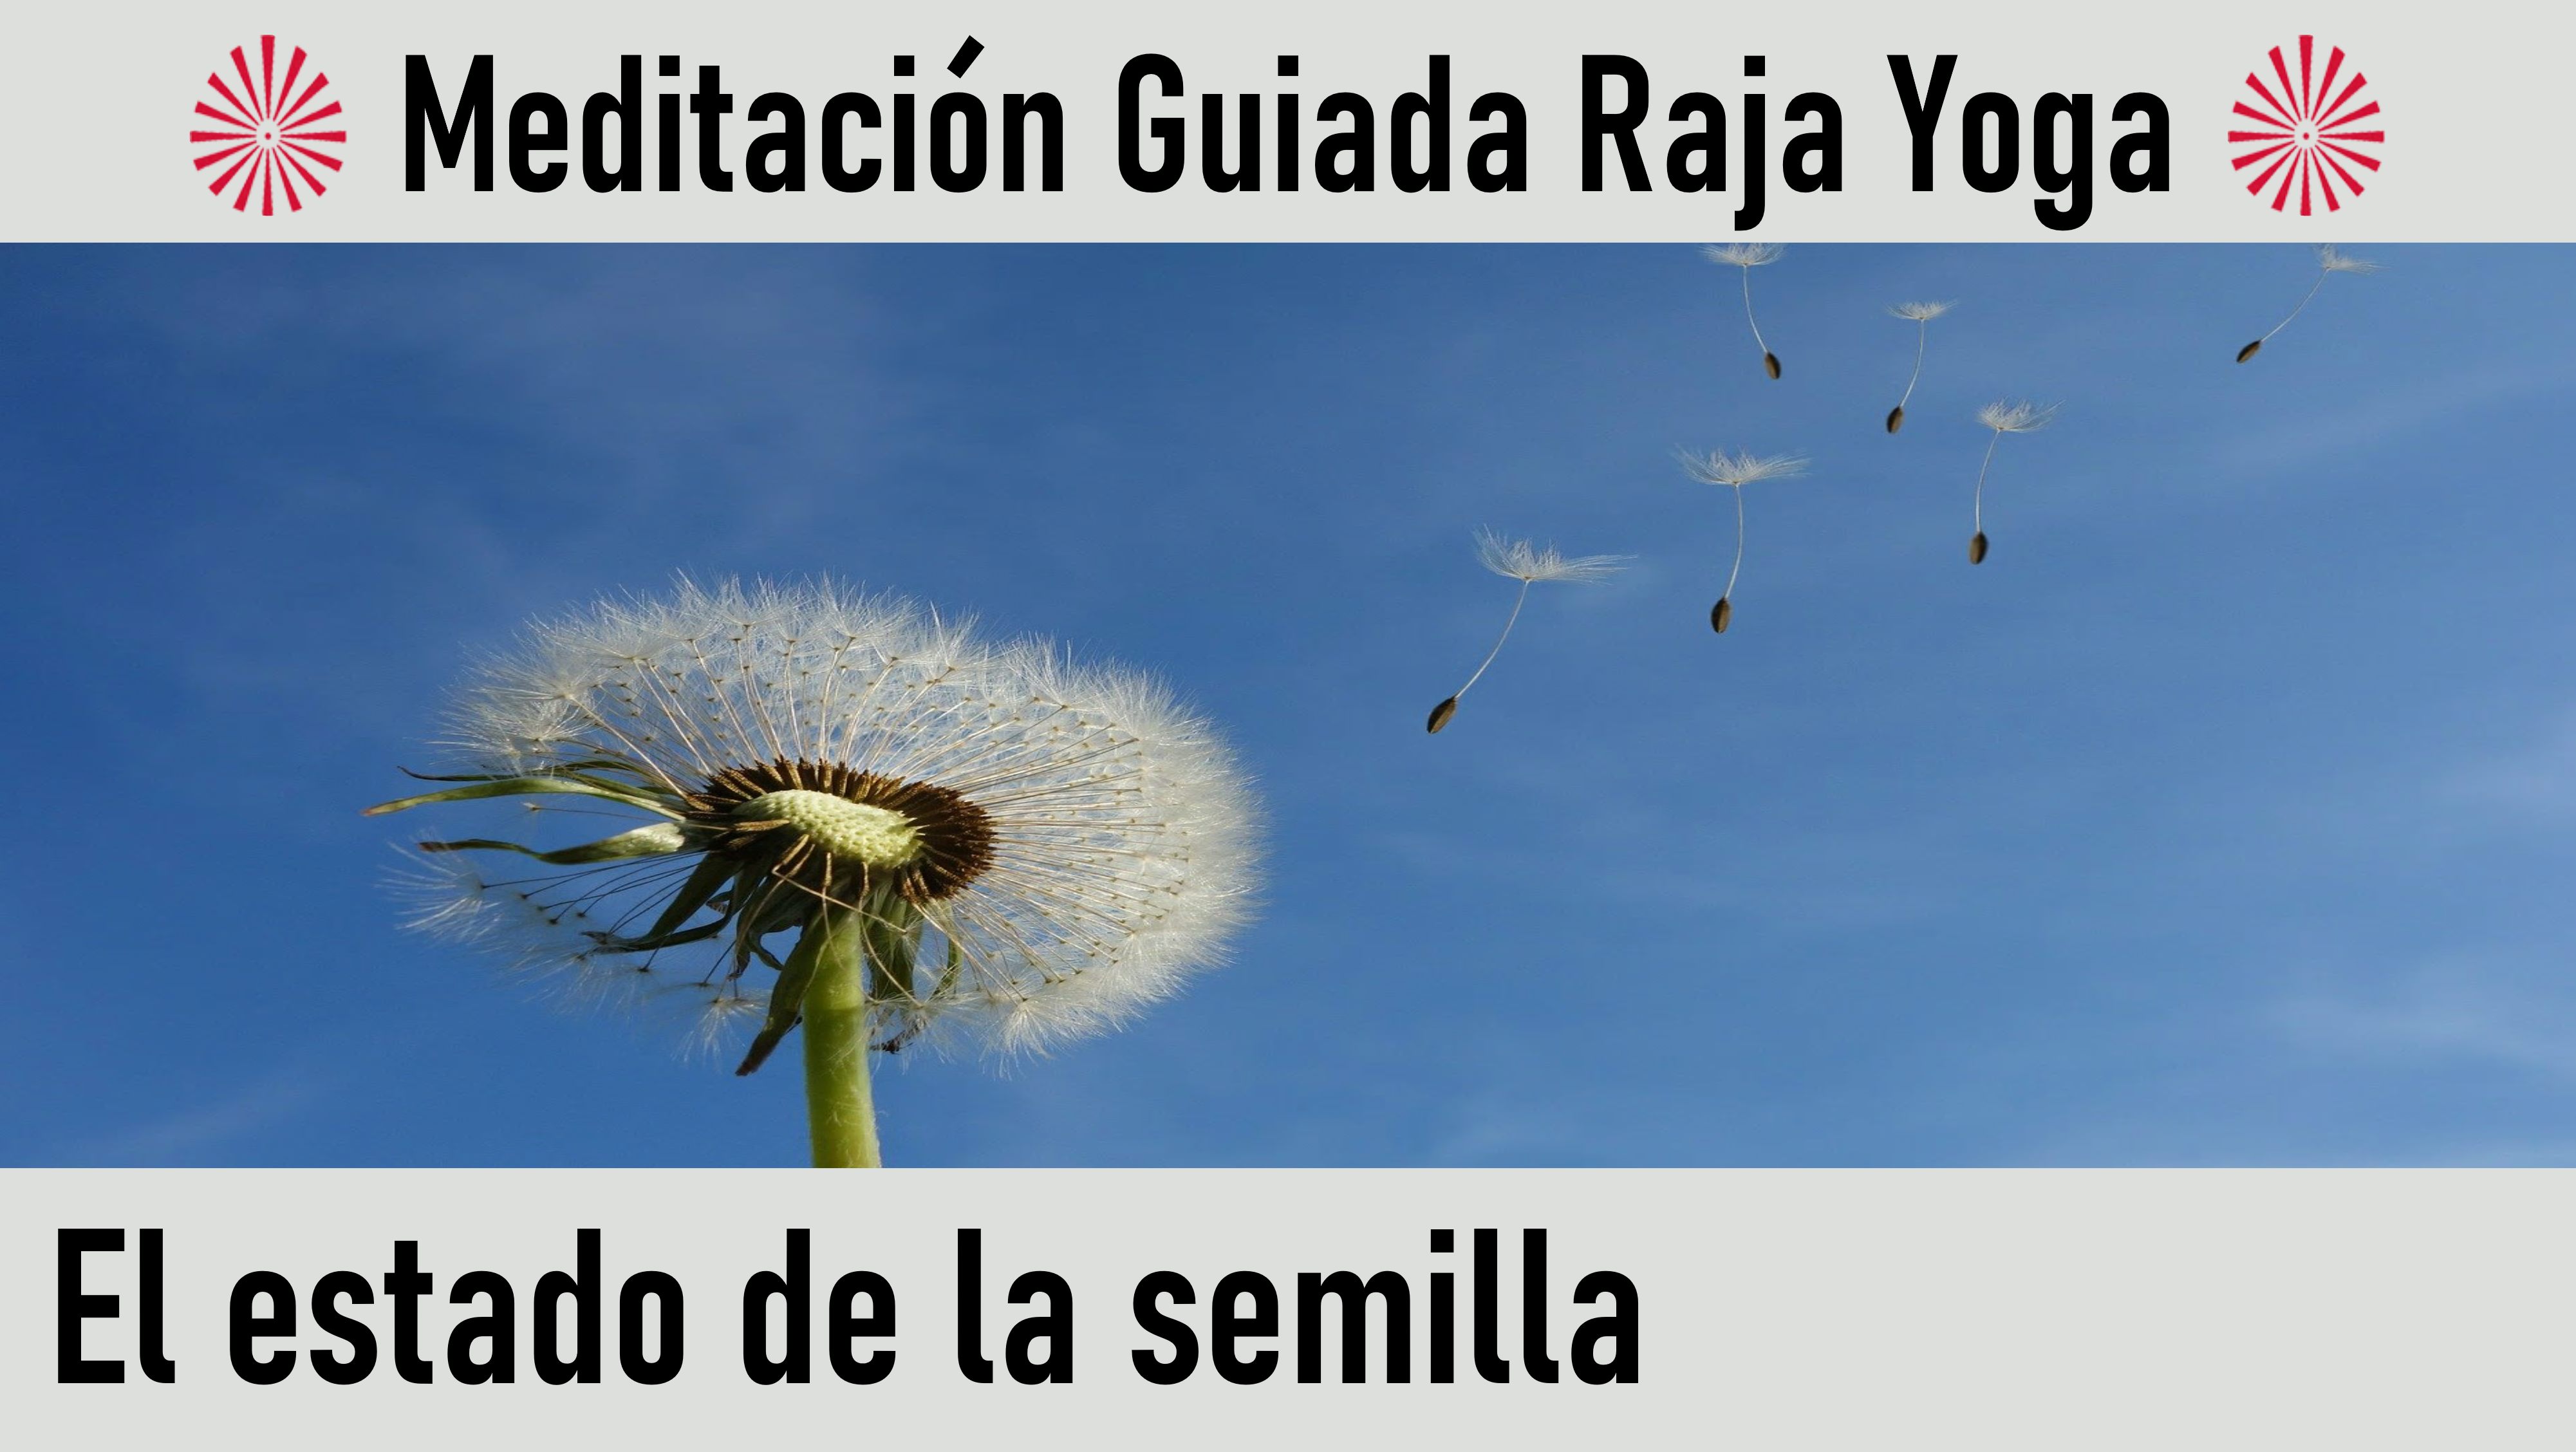 Meditación Raja Yoga: “El estado de la semilla“ (19 Mayo 2020) On-line desde Madrid